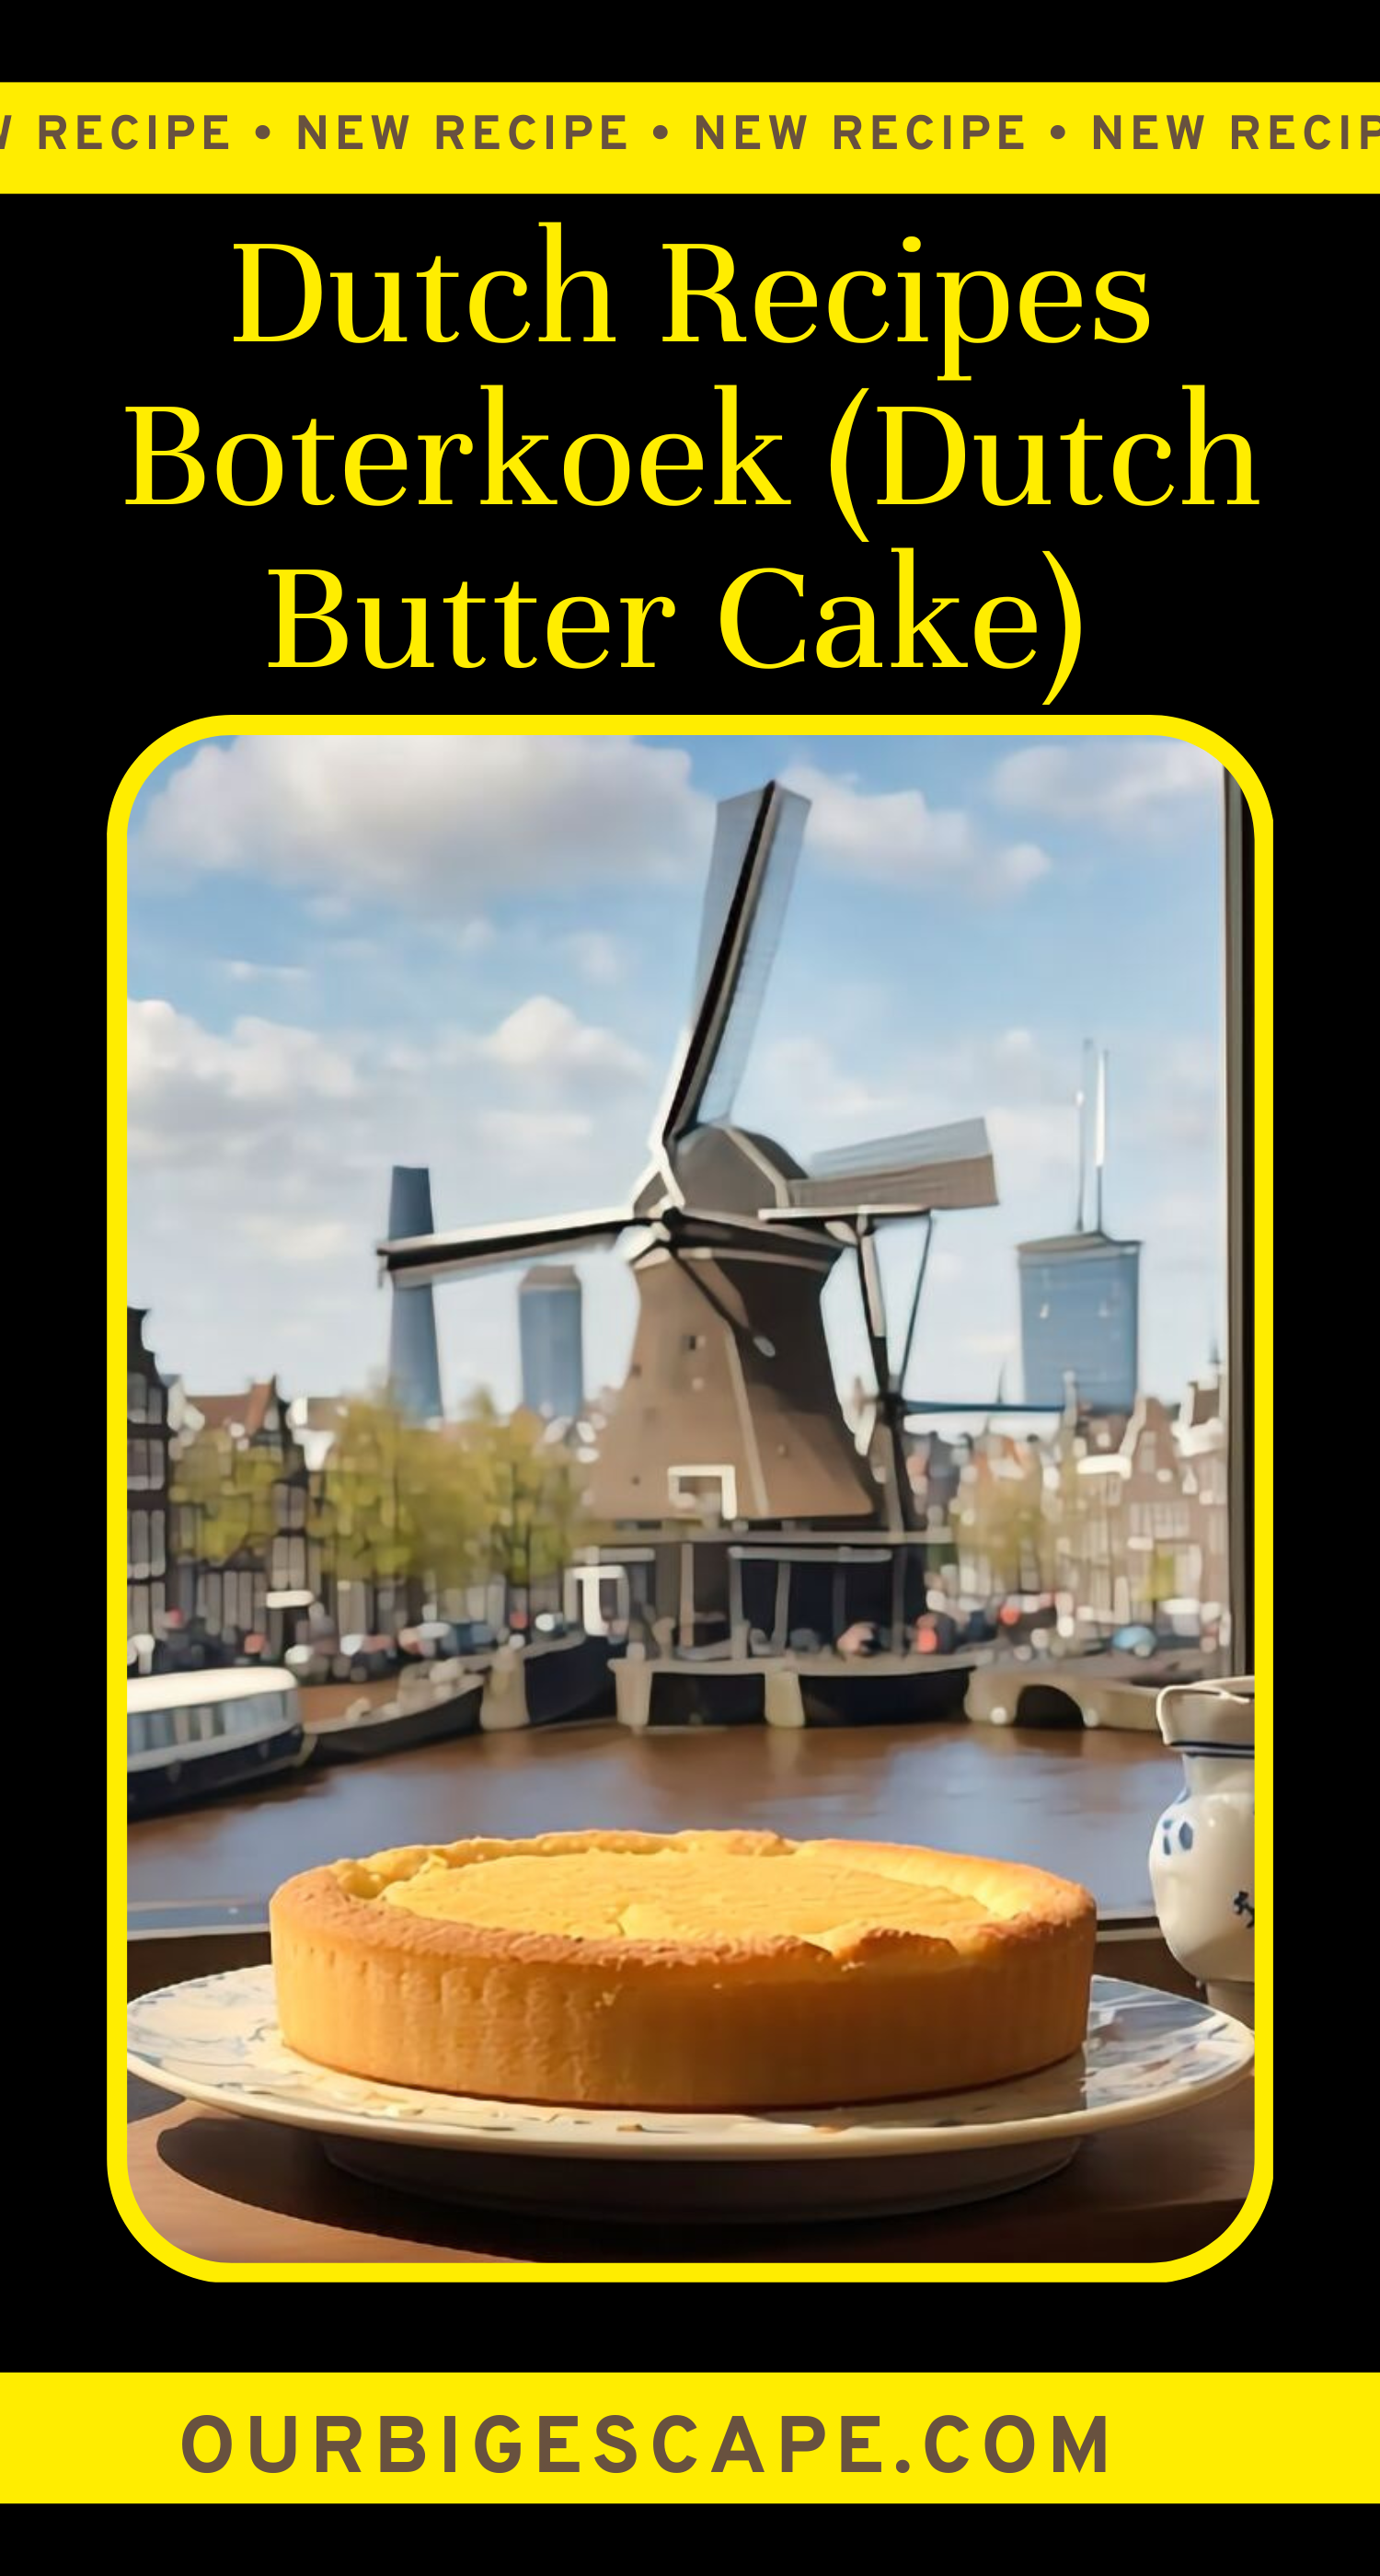 Boterkoek (Dutch Butter Cake)